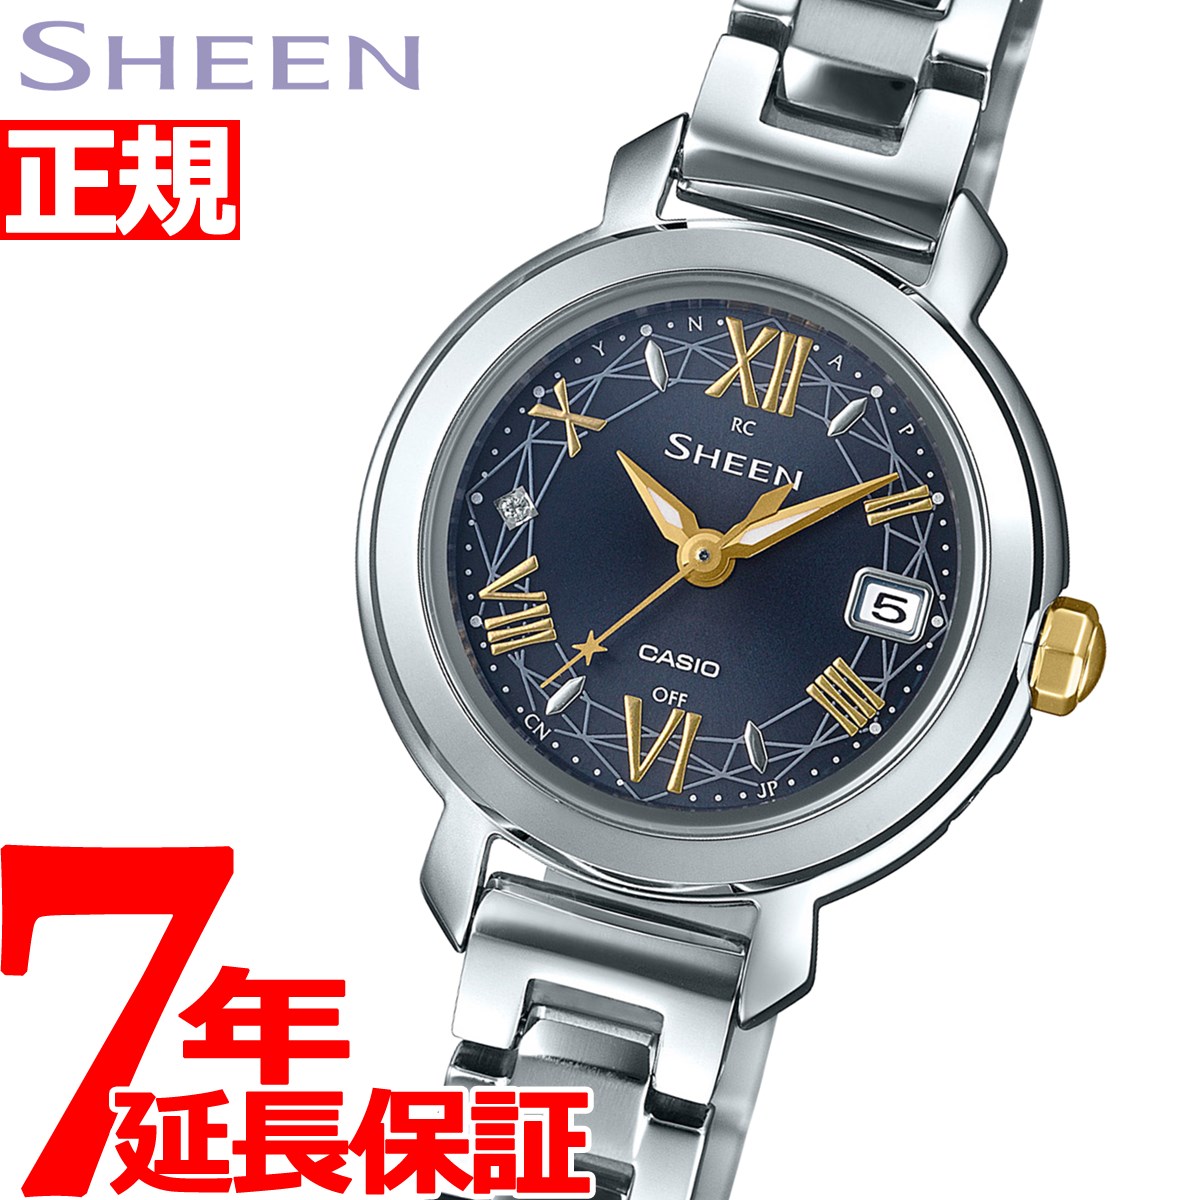 楽天市場】カシオ シーン CASIO SHEEN 電波 ソーラー 電波時計 腕時計